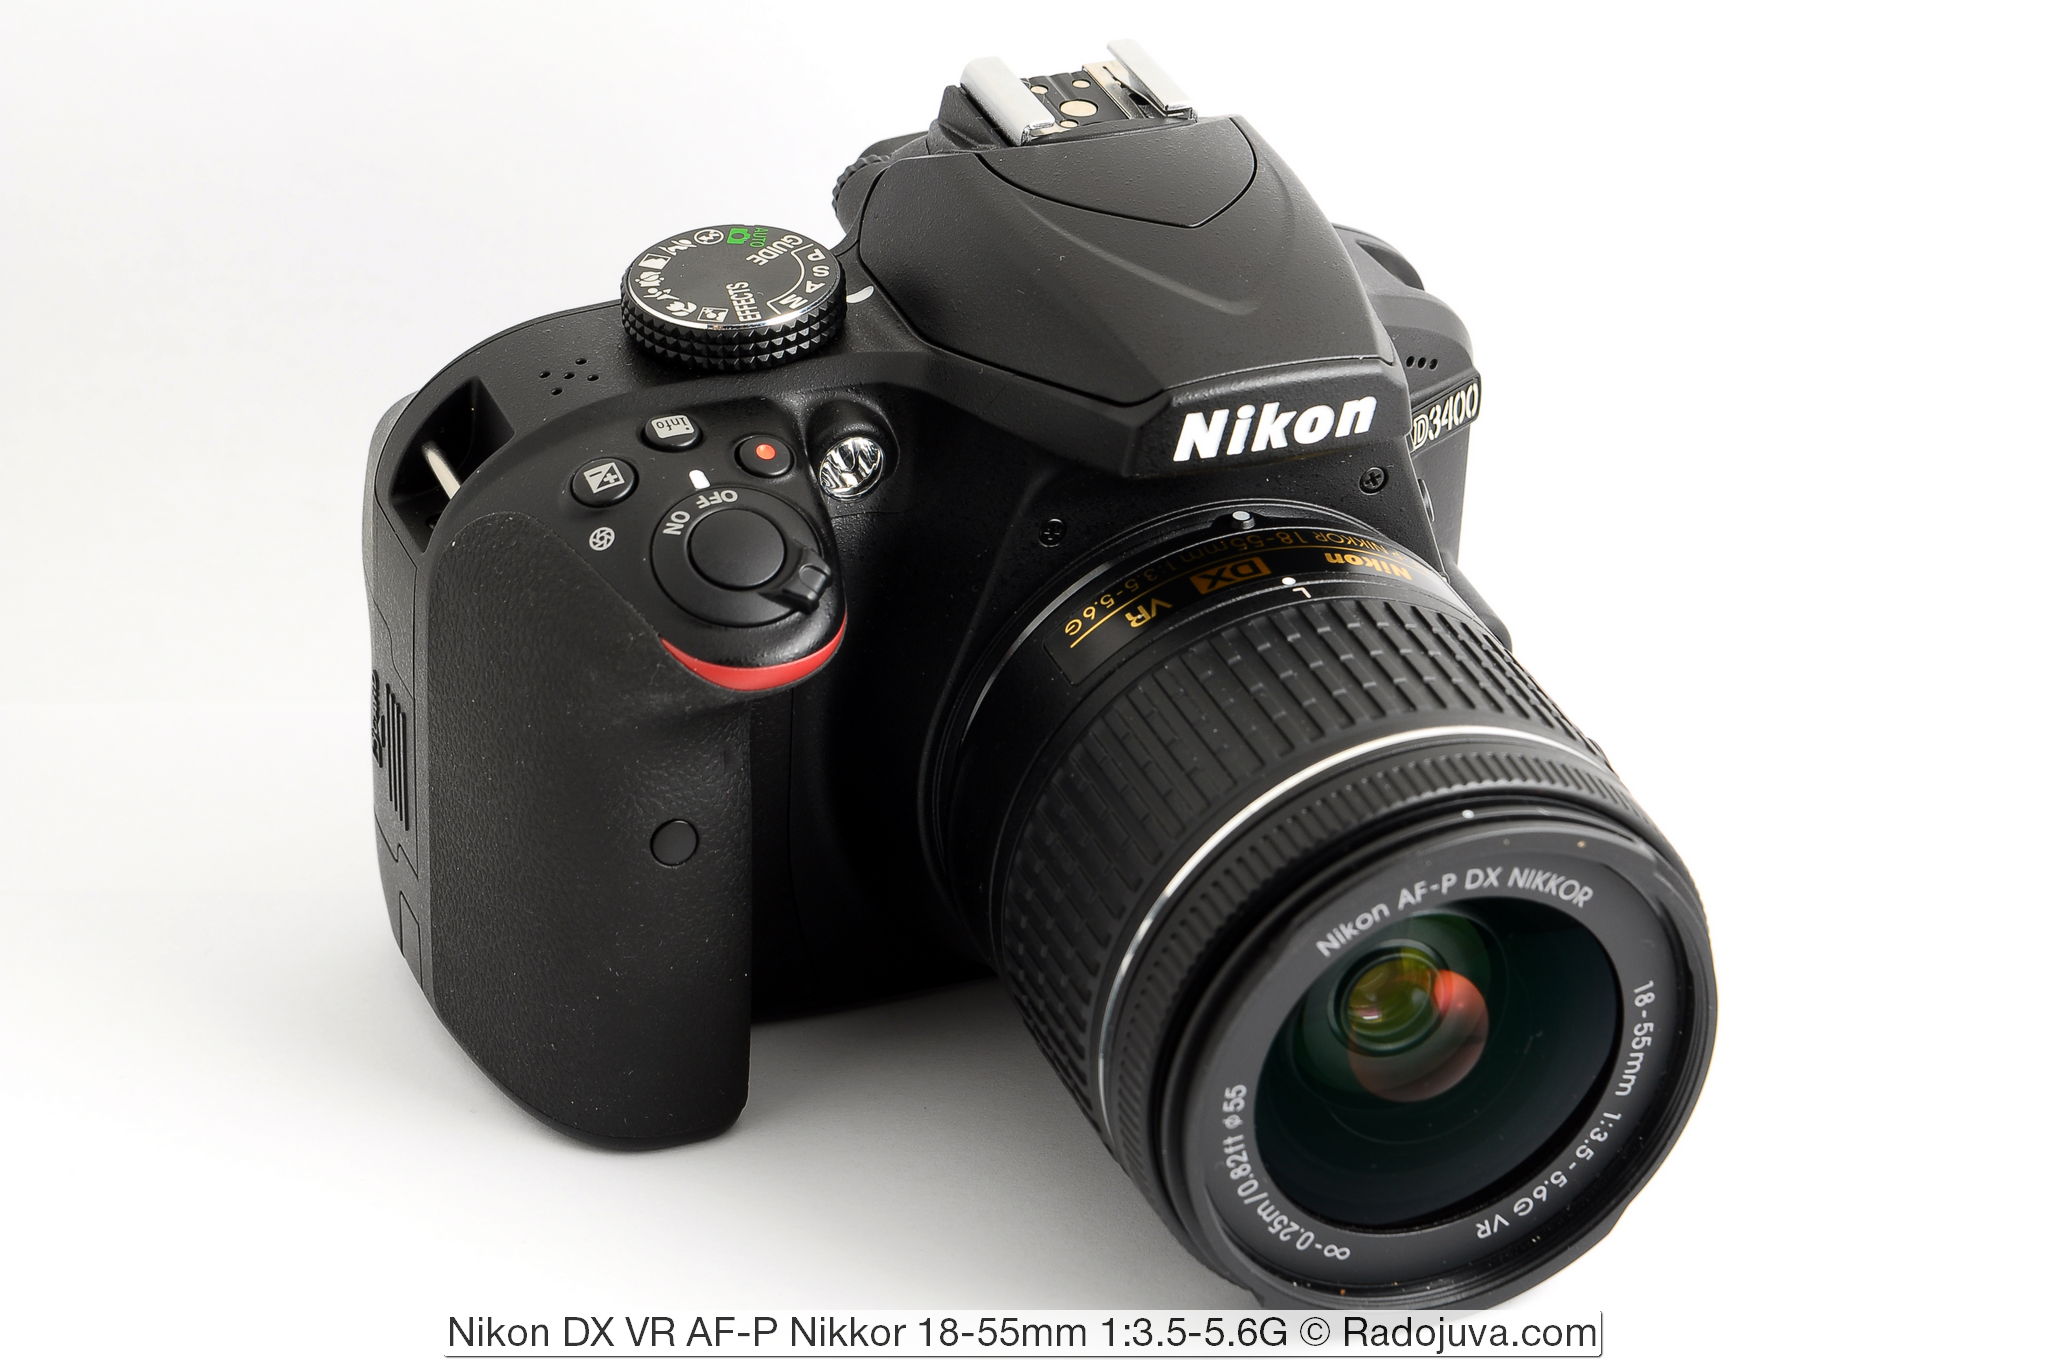 Nikon DX VR AF-P Nikkor 18-55mm 1:3.5-5.6G y cámara Nikon D3400